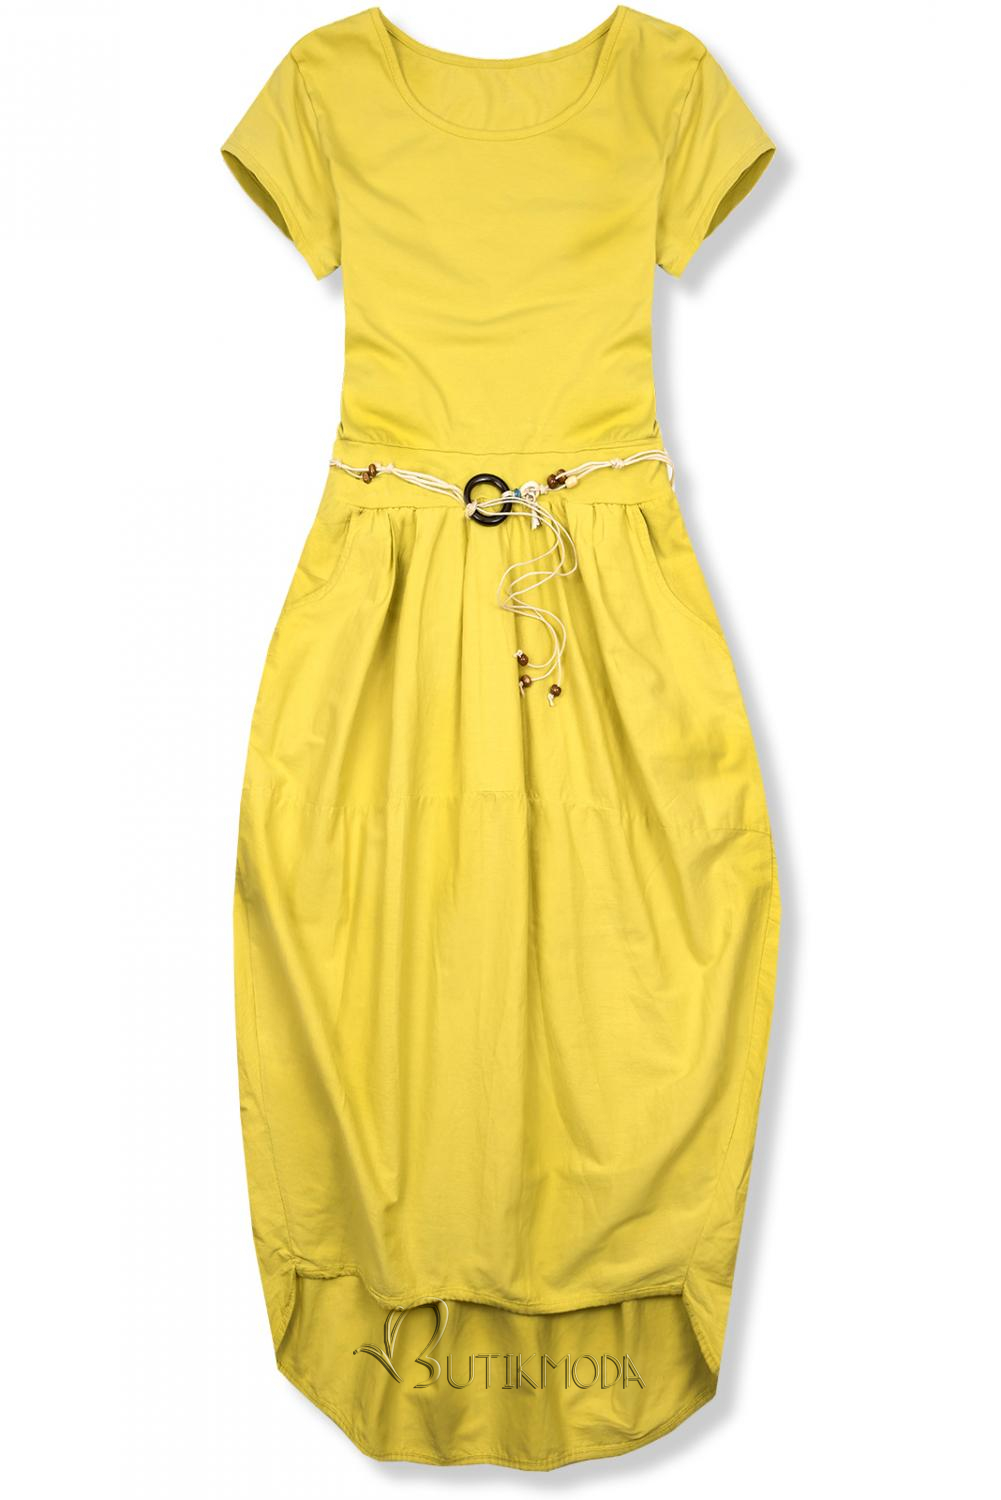 Sárga színű midi ruha basic stílusban